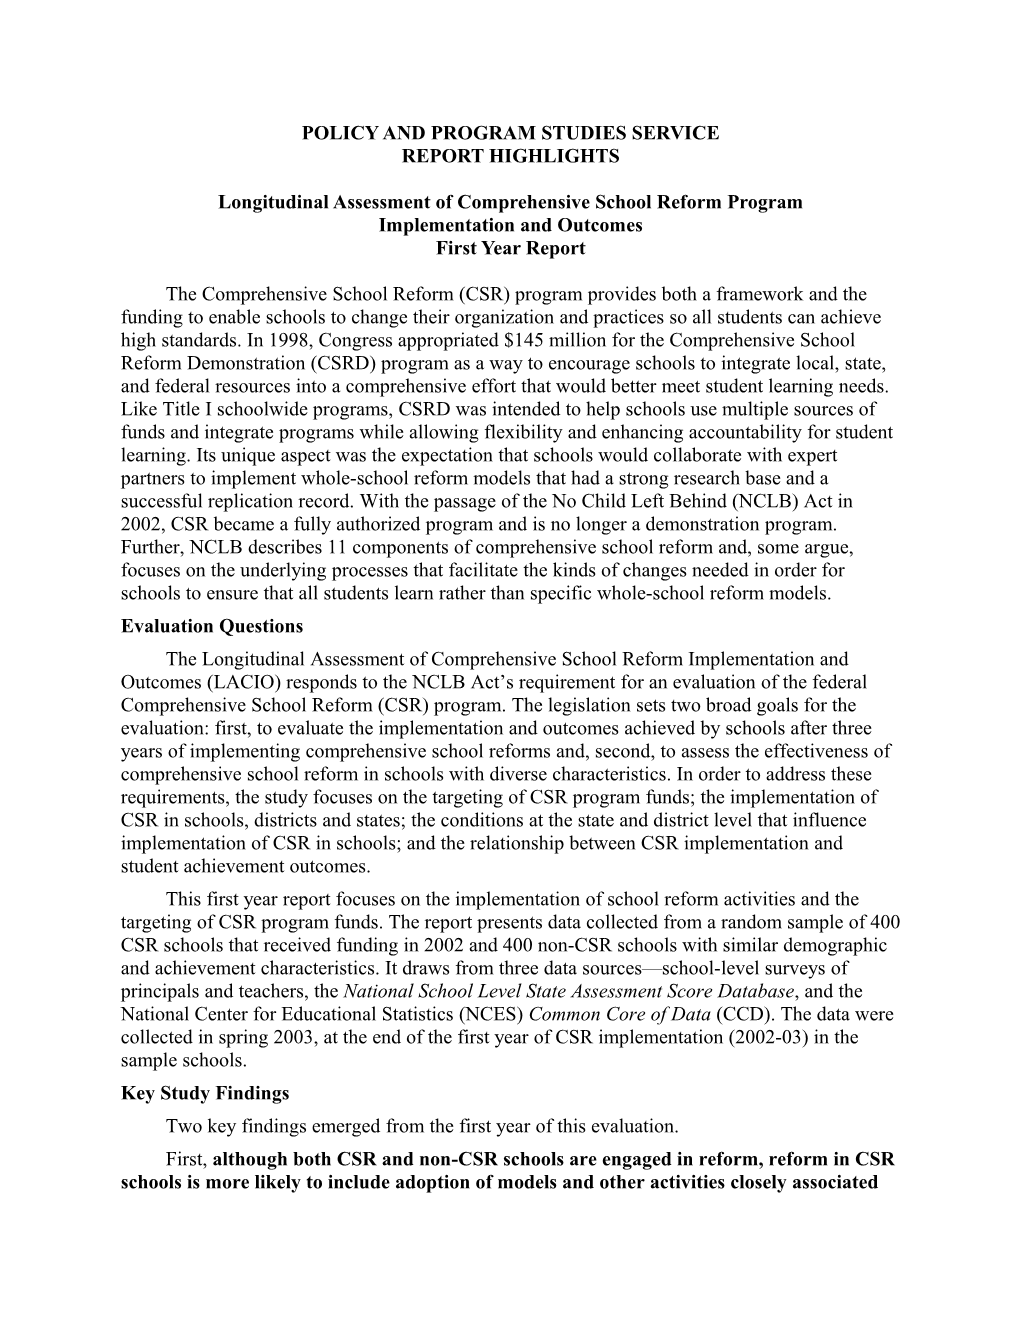 Report Highlights: Longitudinal Assessment of Comprehensive School Reform Program Implementation